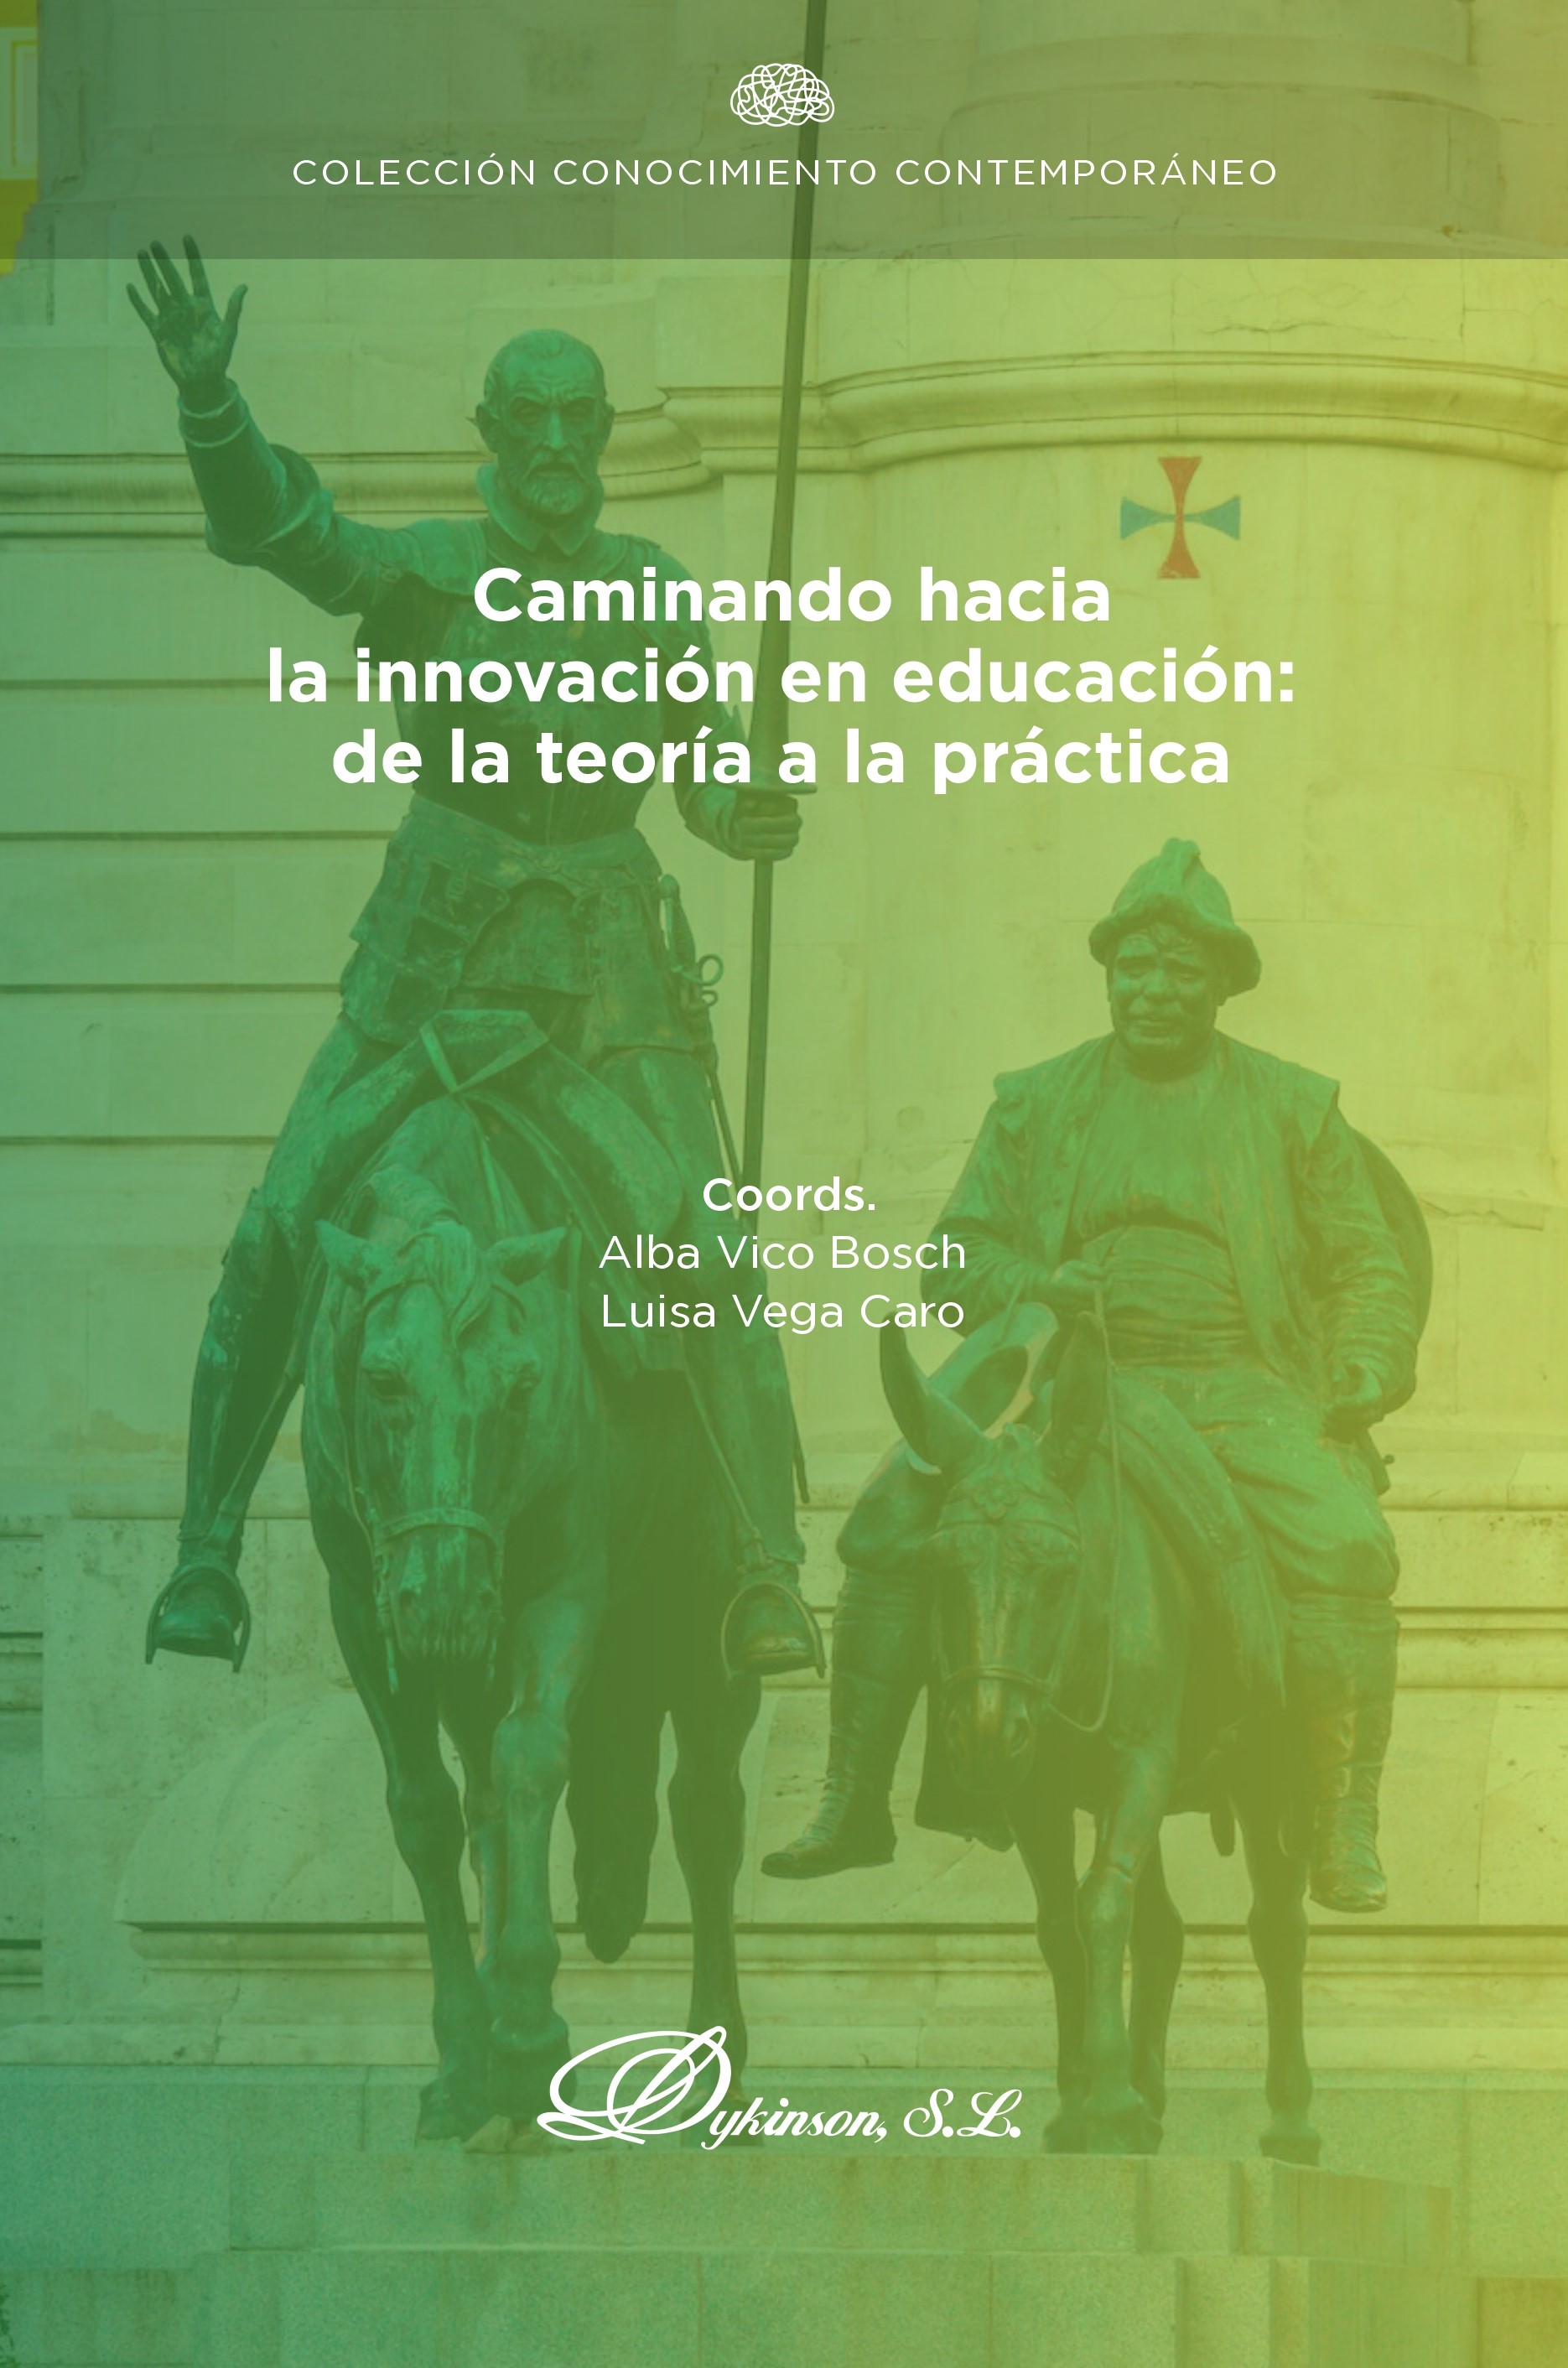 Imagen de portada del libro Caminando hacia la innovación en educación: de la teoría a la práctica